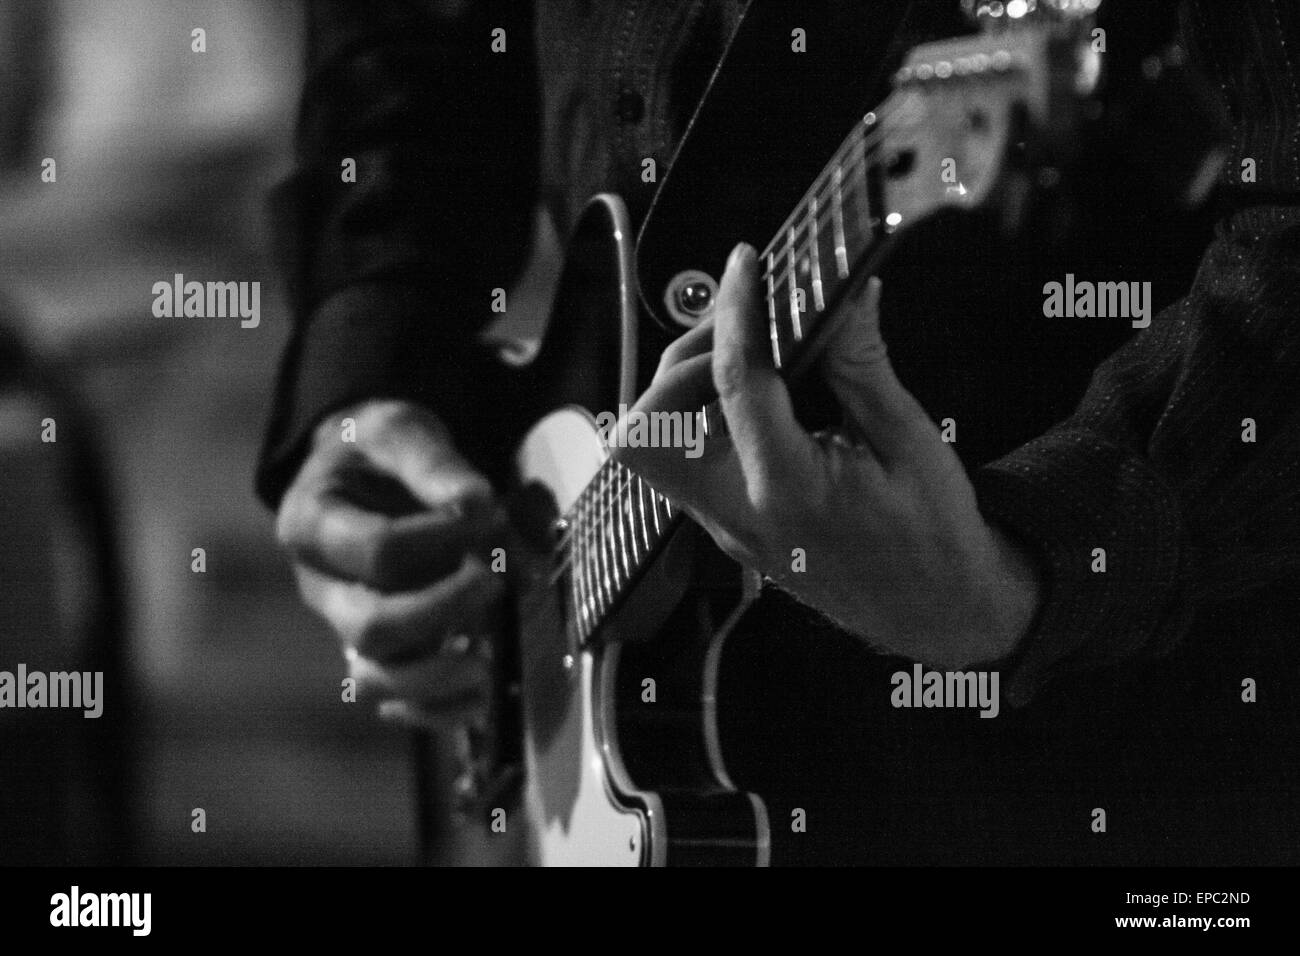 Guitar Player mit Fender Telecaster Gitarre in Schwarz & Weiß - Detail an der Gitarre Hals und Hände ohne Gesicht Stockfoto